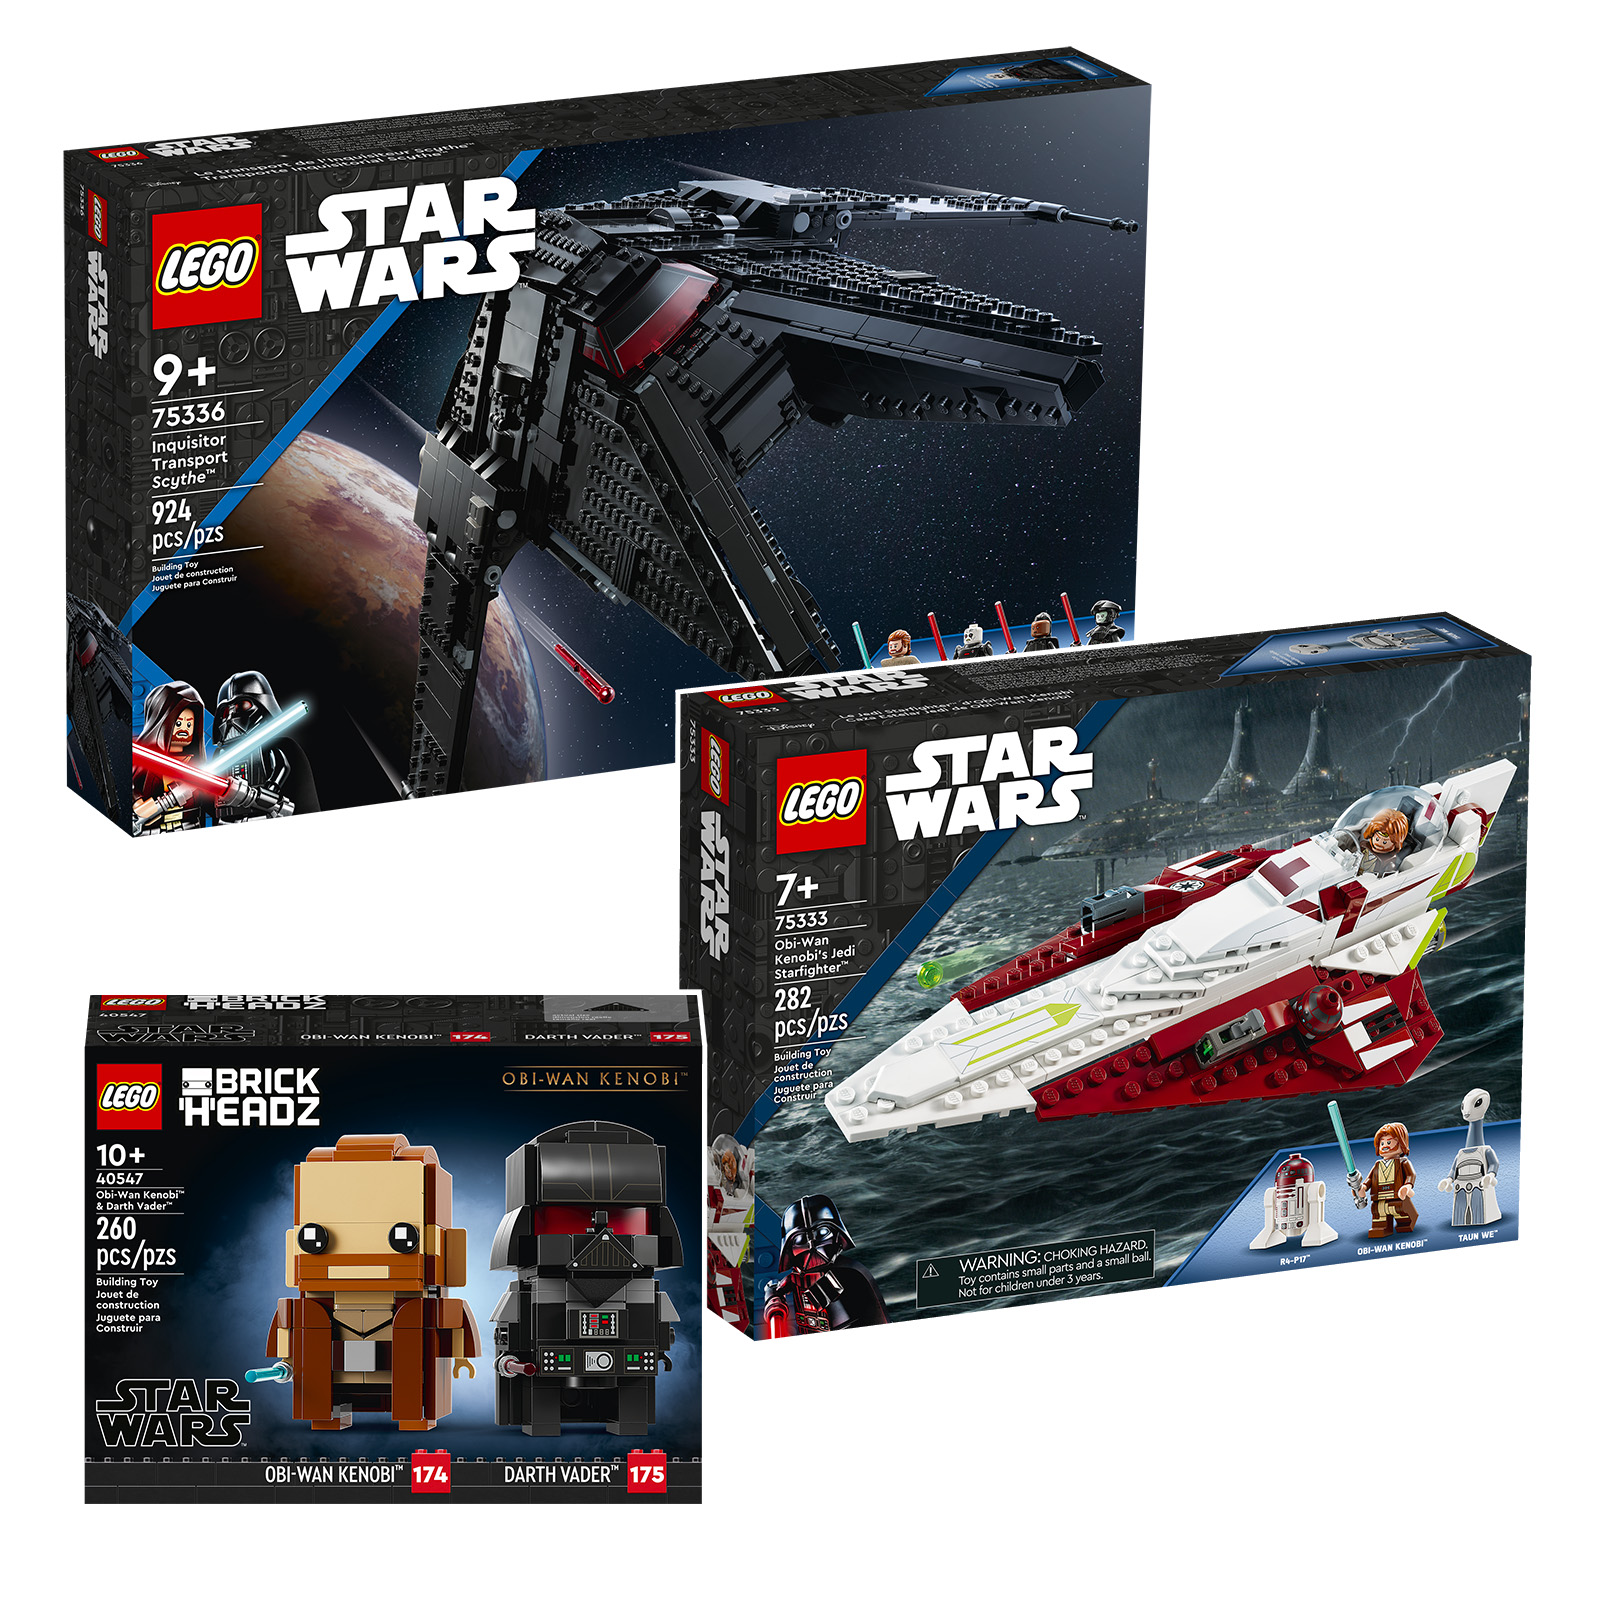 ថ្មីនៅក្នុង LEGO Star Wars សម្រាប់ពាក់កណ្តាលទីពីរនៃឆ្នាំ 2022៖ Obi-Wan Kenobi នៅក្នុងទឹកជ្រលក់ទាំងអស់